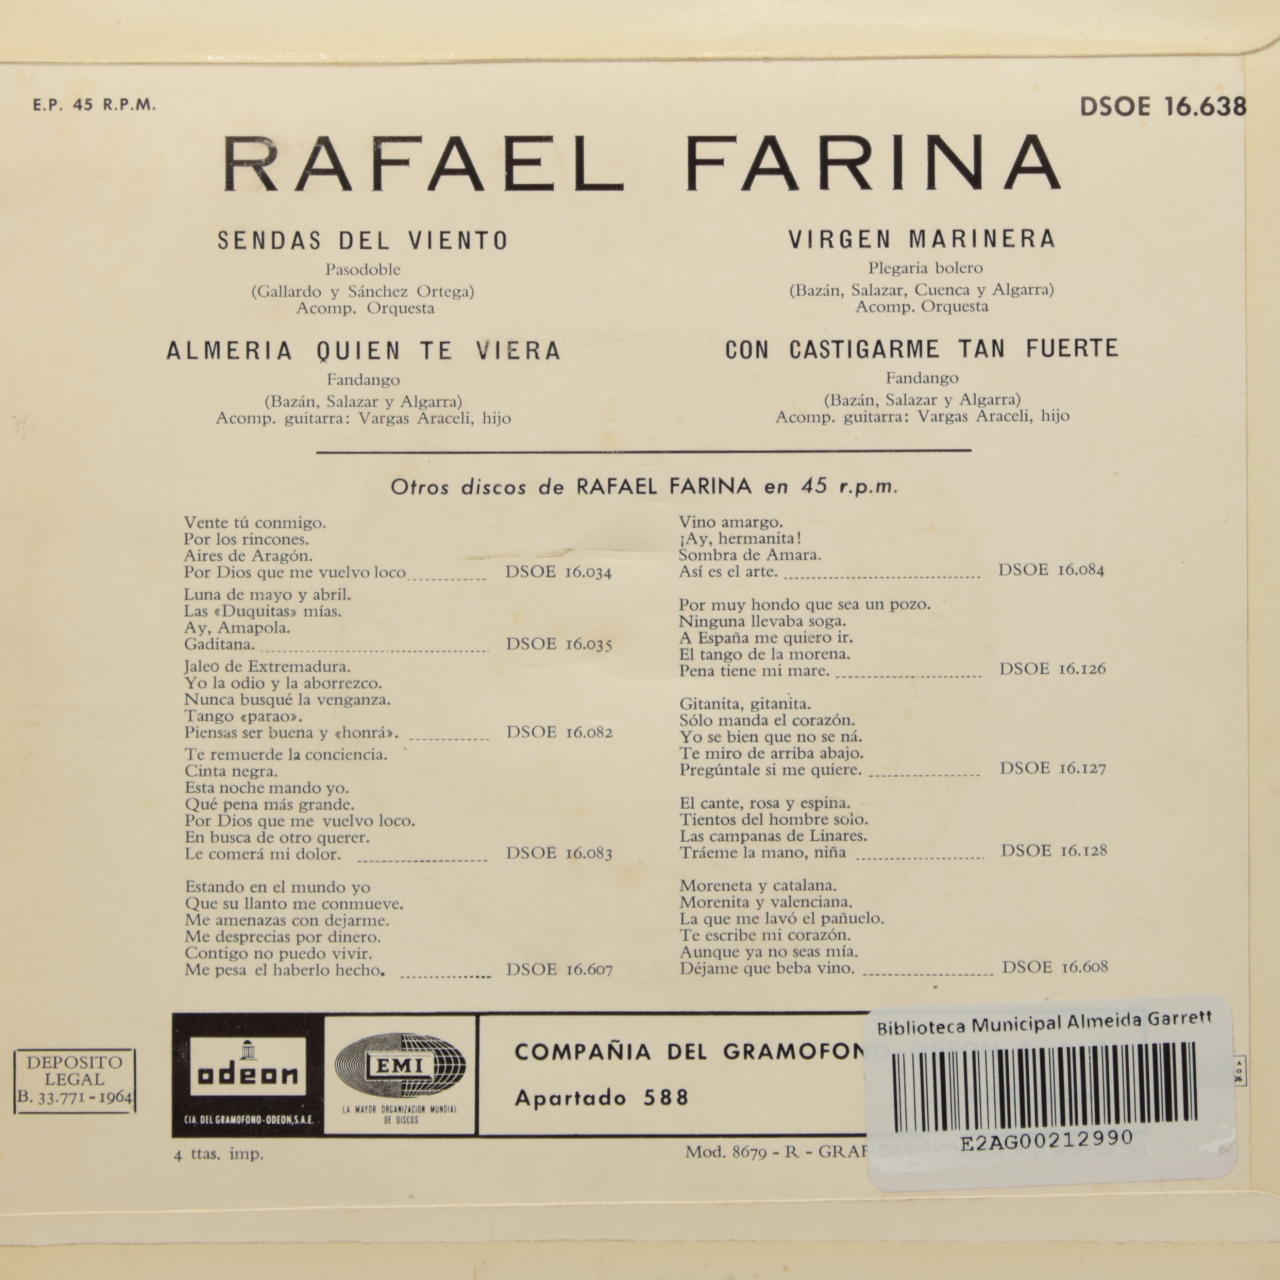 Rafael Farina canta a la memoria de Carmen Amaya